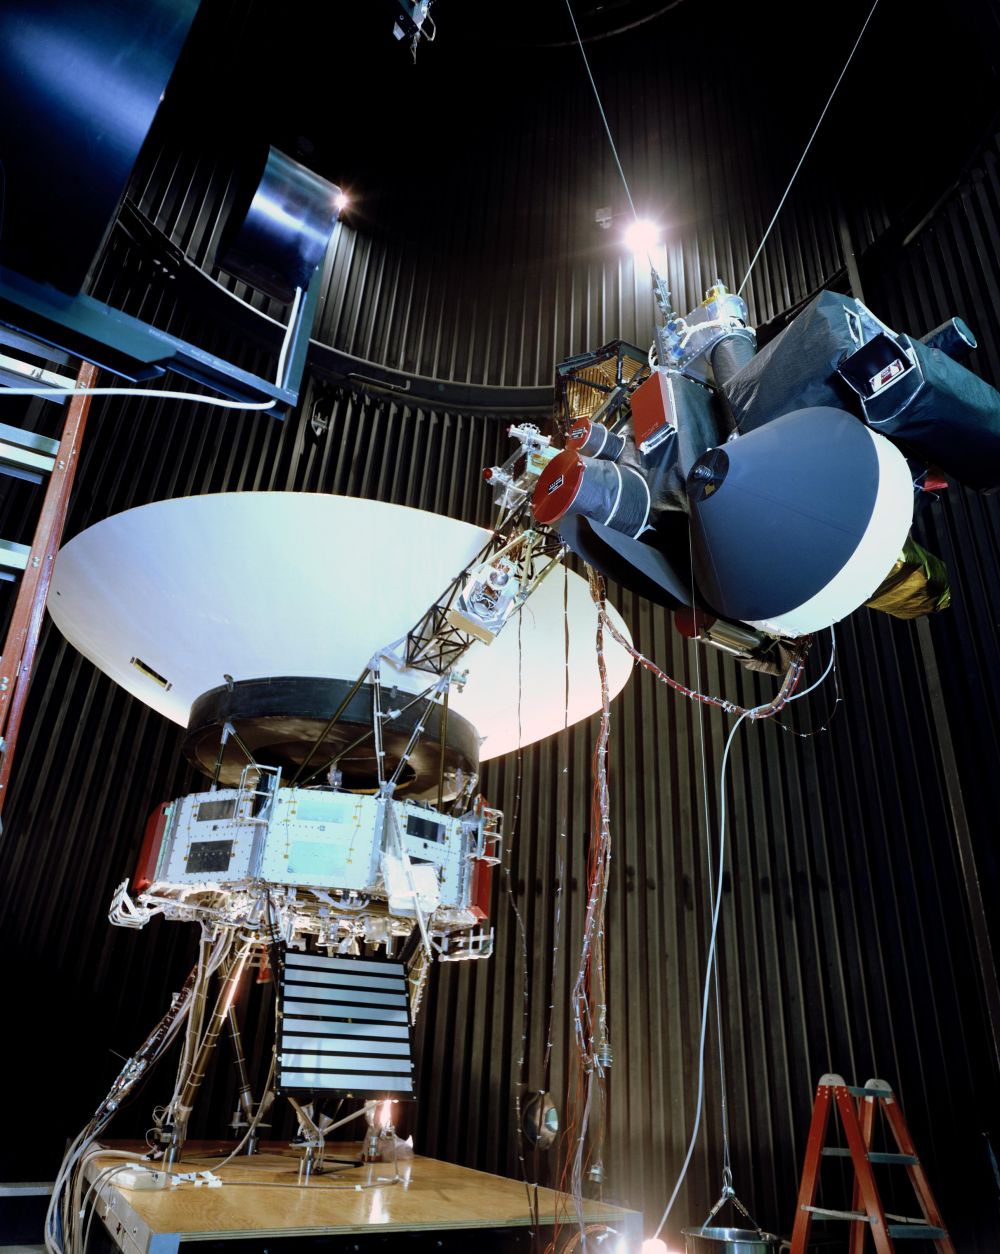 Wow, tembang Jawa ini dibawa Voyager dalam misi terjauh dari bumi